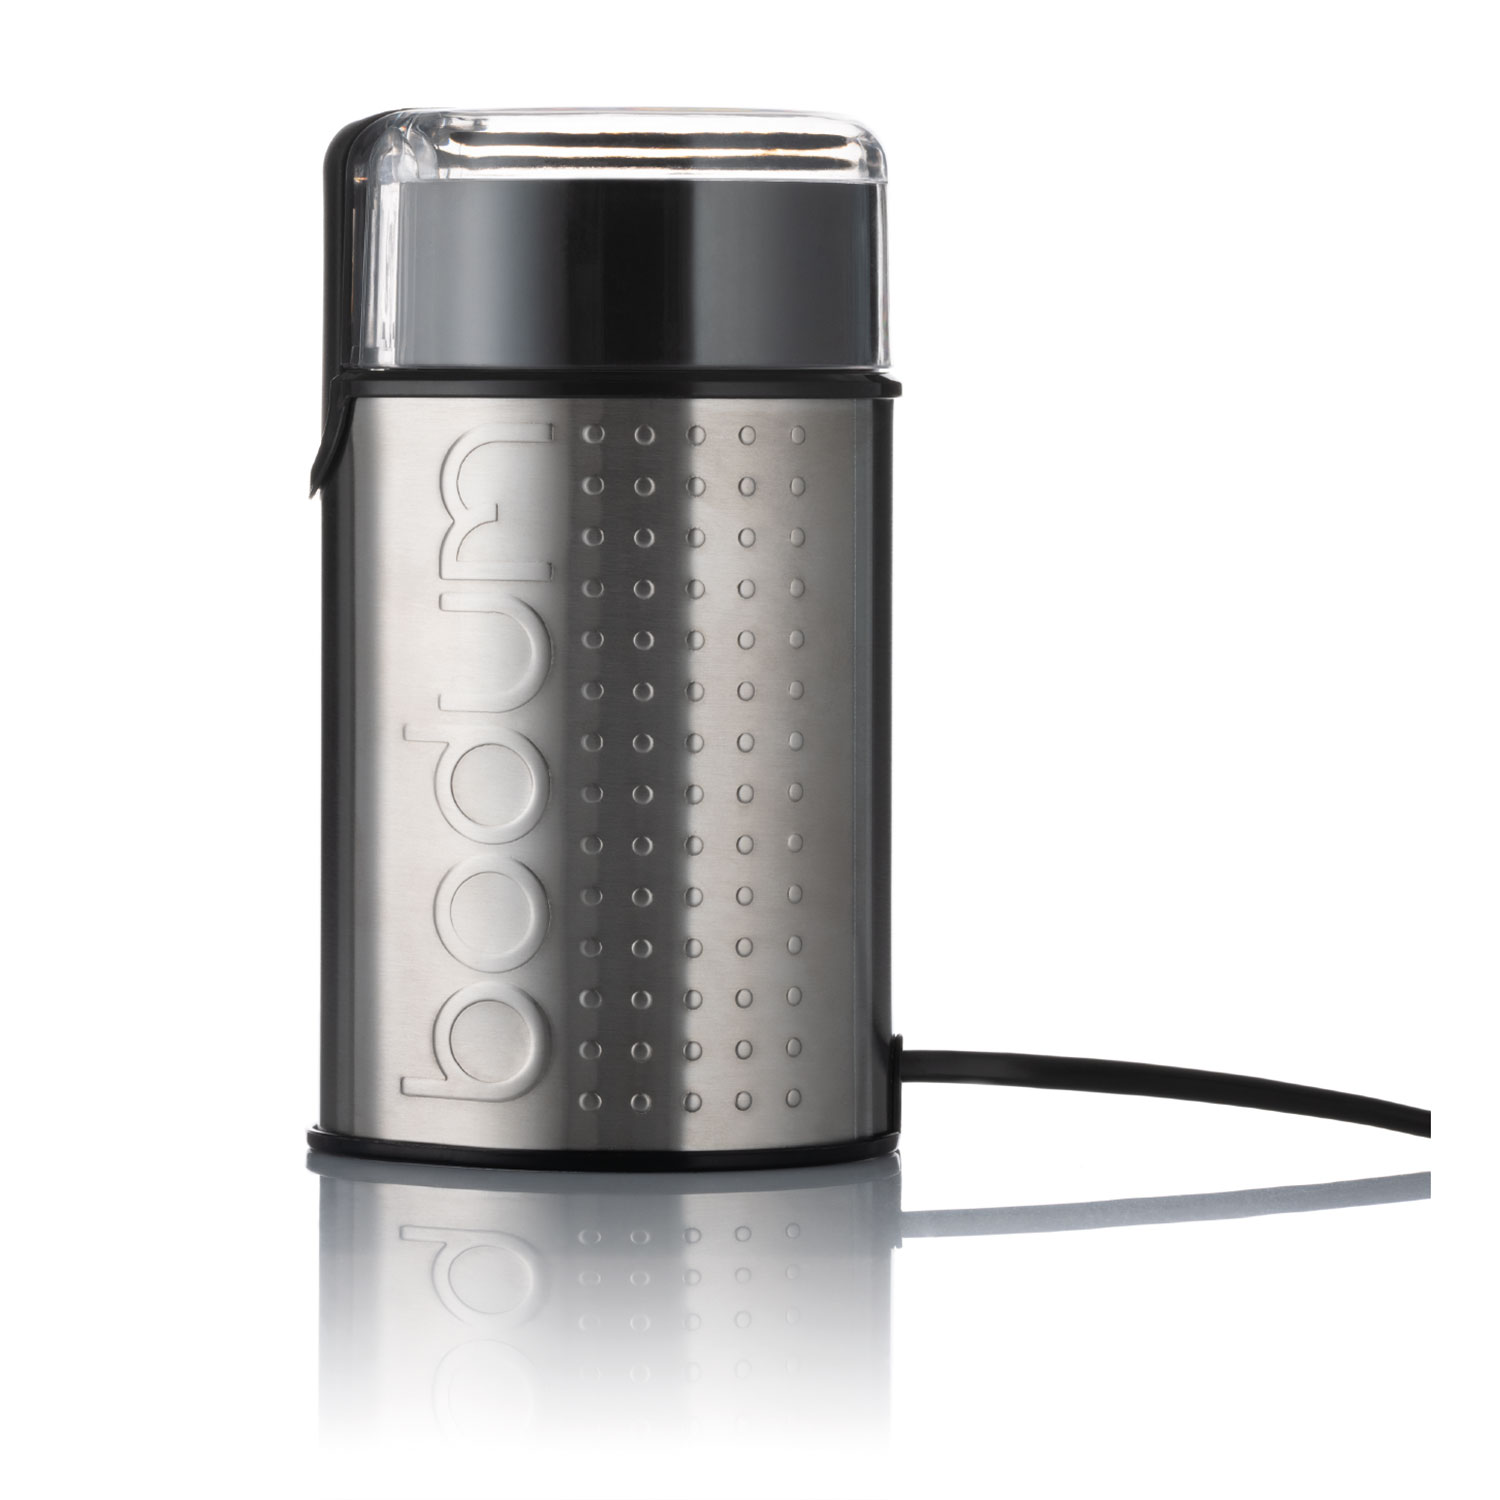 Rig-Tig by Stelton - Foodie Electric coffee grinder